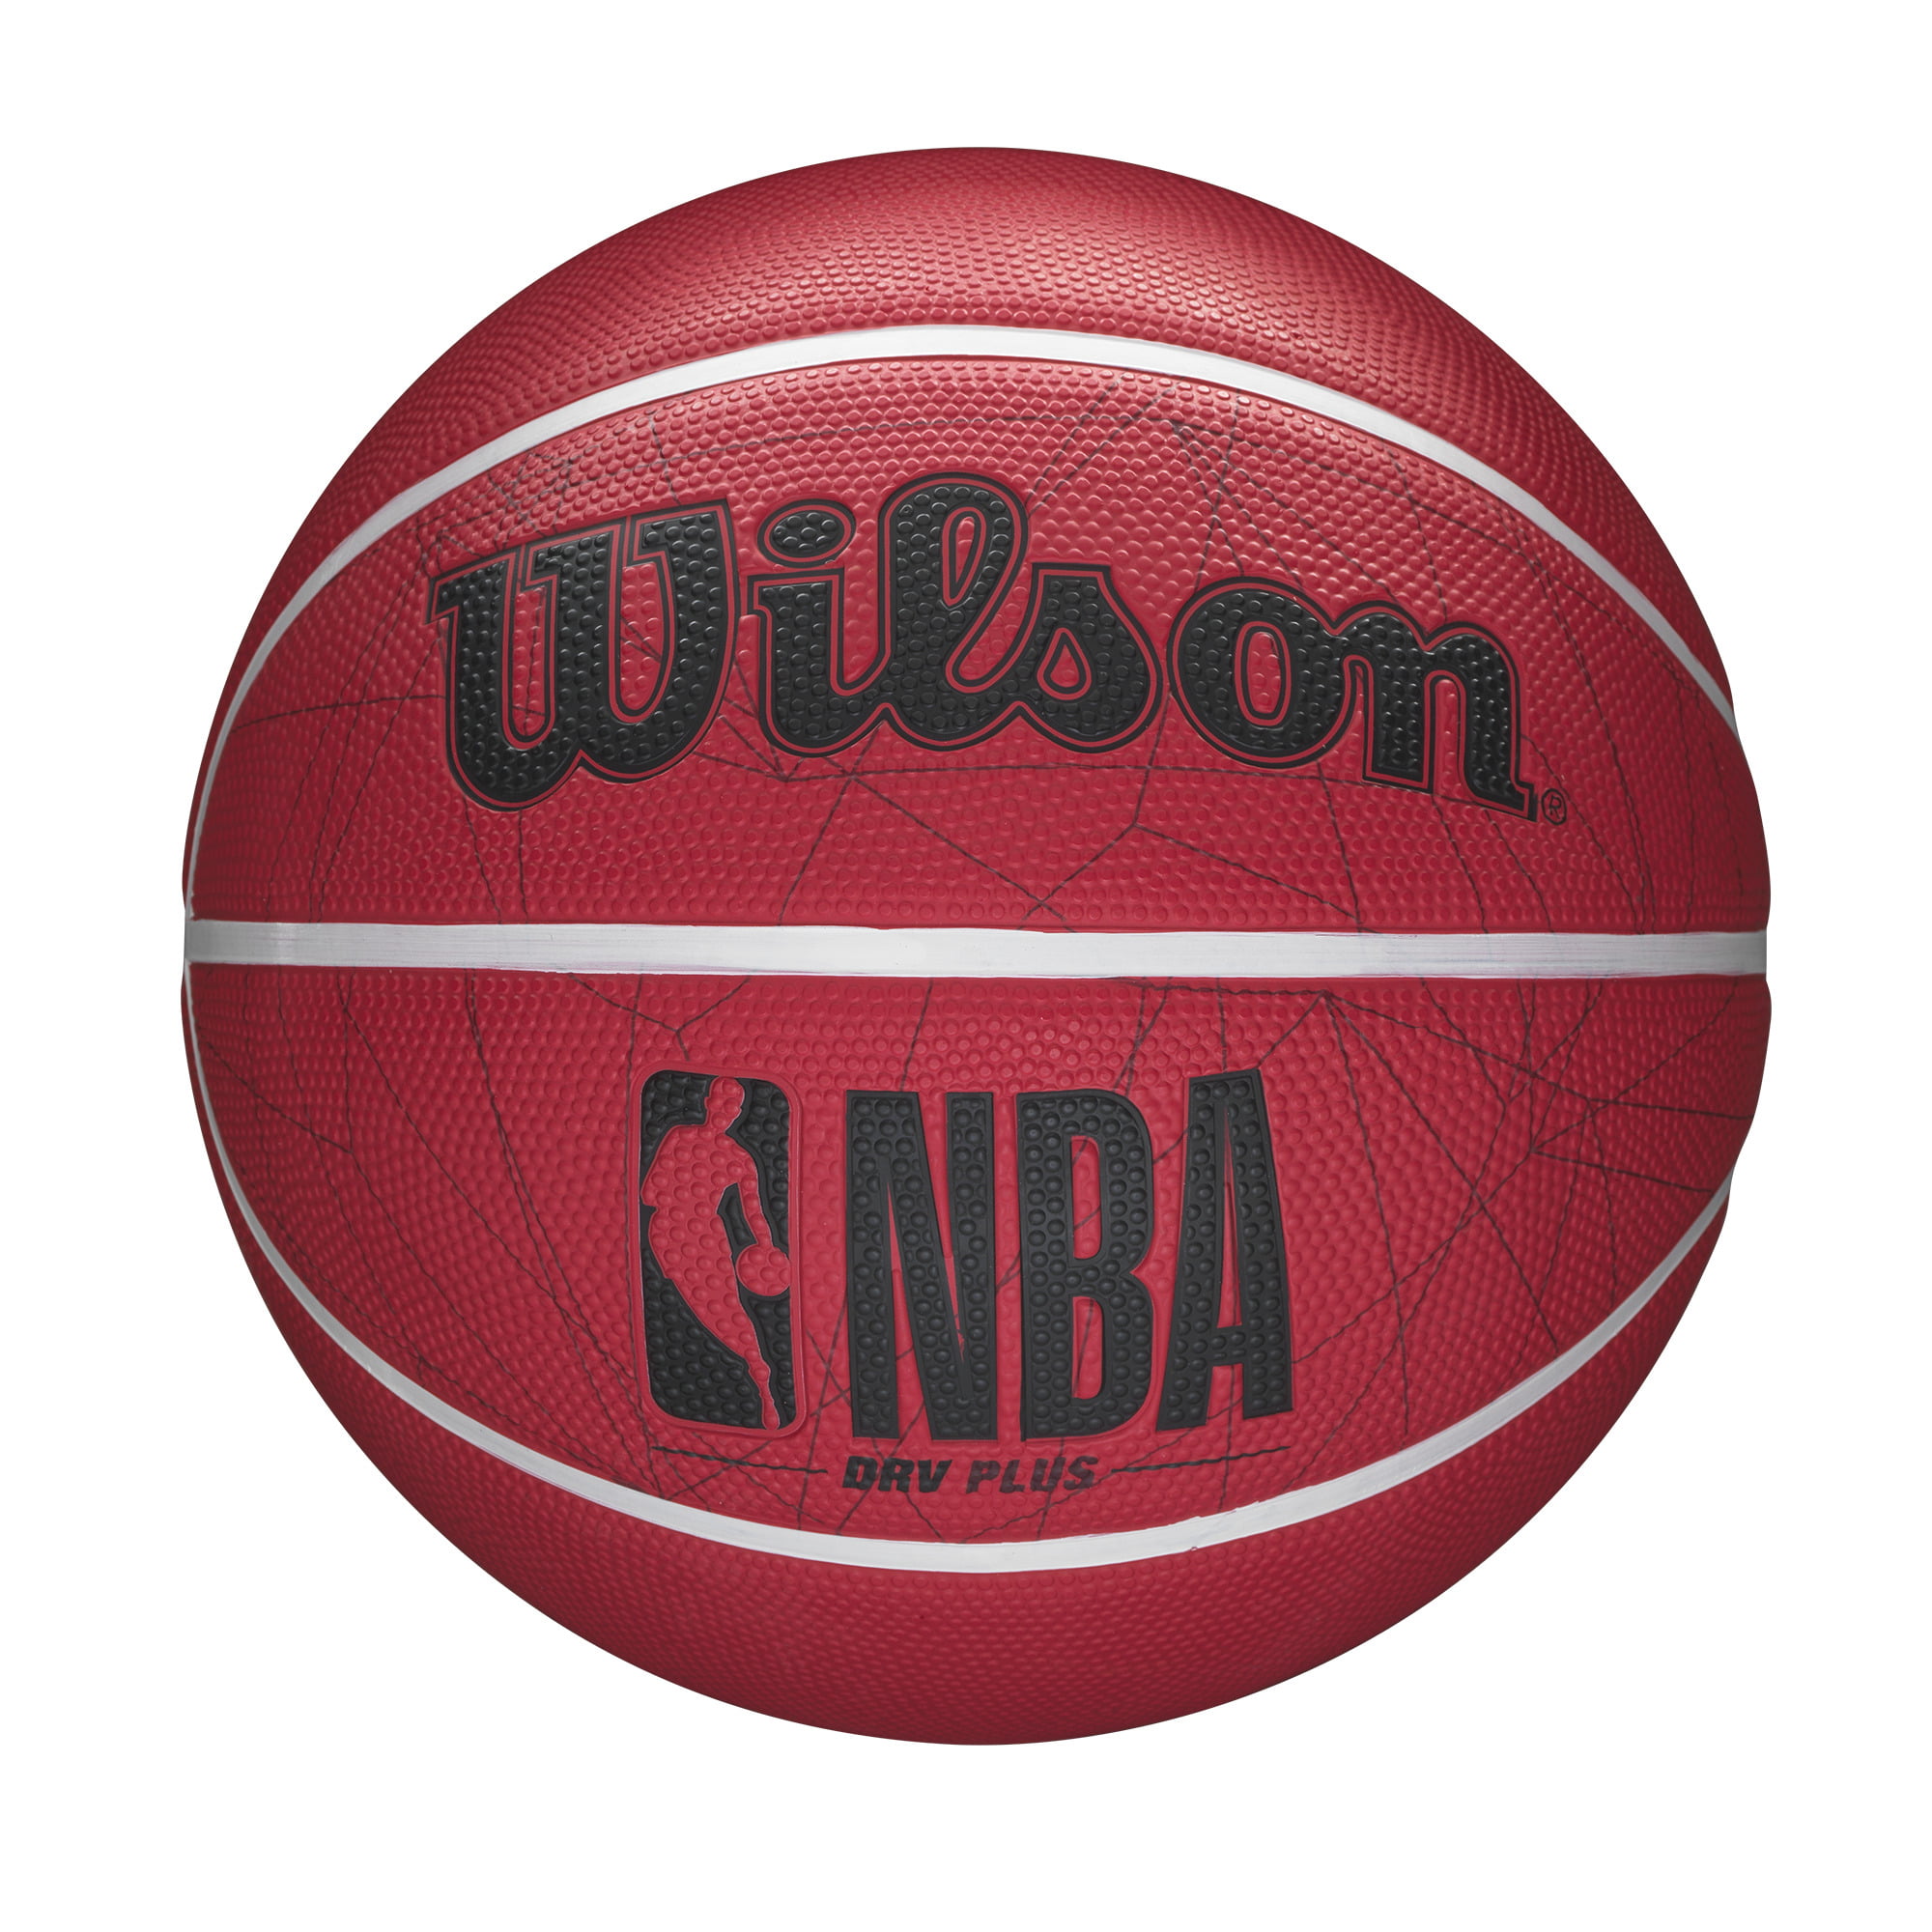 Comprar Balón Baloncesto Wilson NBA DRV Plus Vibe Talla 6